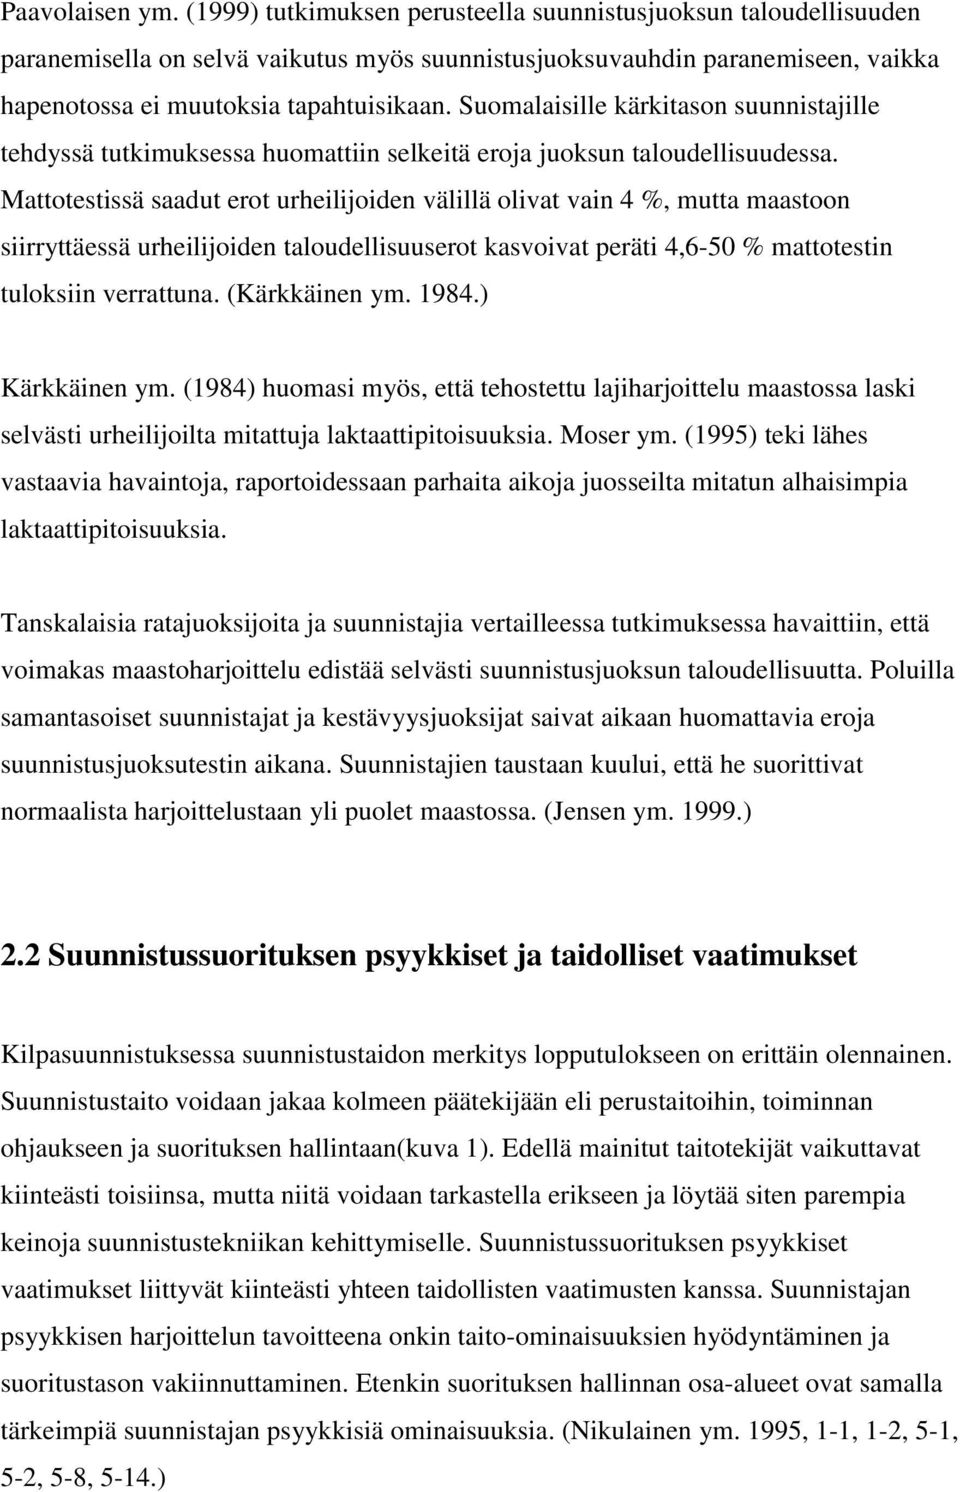 Suomalaisille kärkitason suunnistajille tehdyssä tutkimuksessa huomattiin selkeitä eroja juoksun taloudellisuudessa.